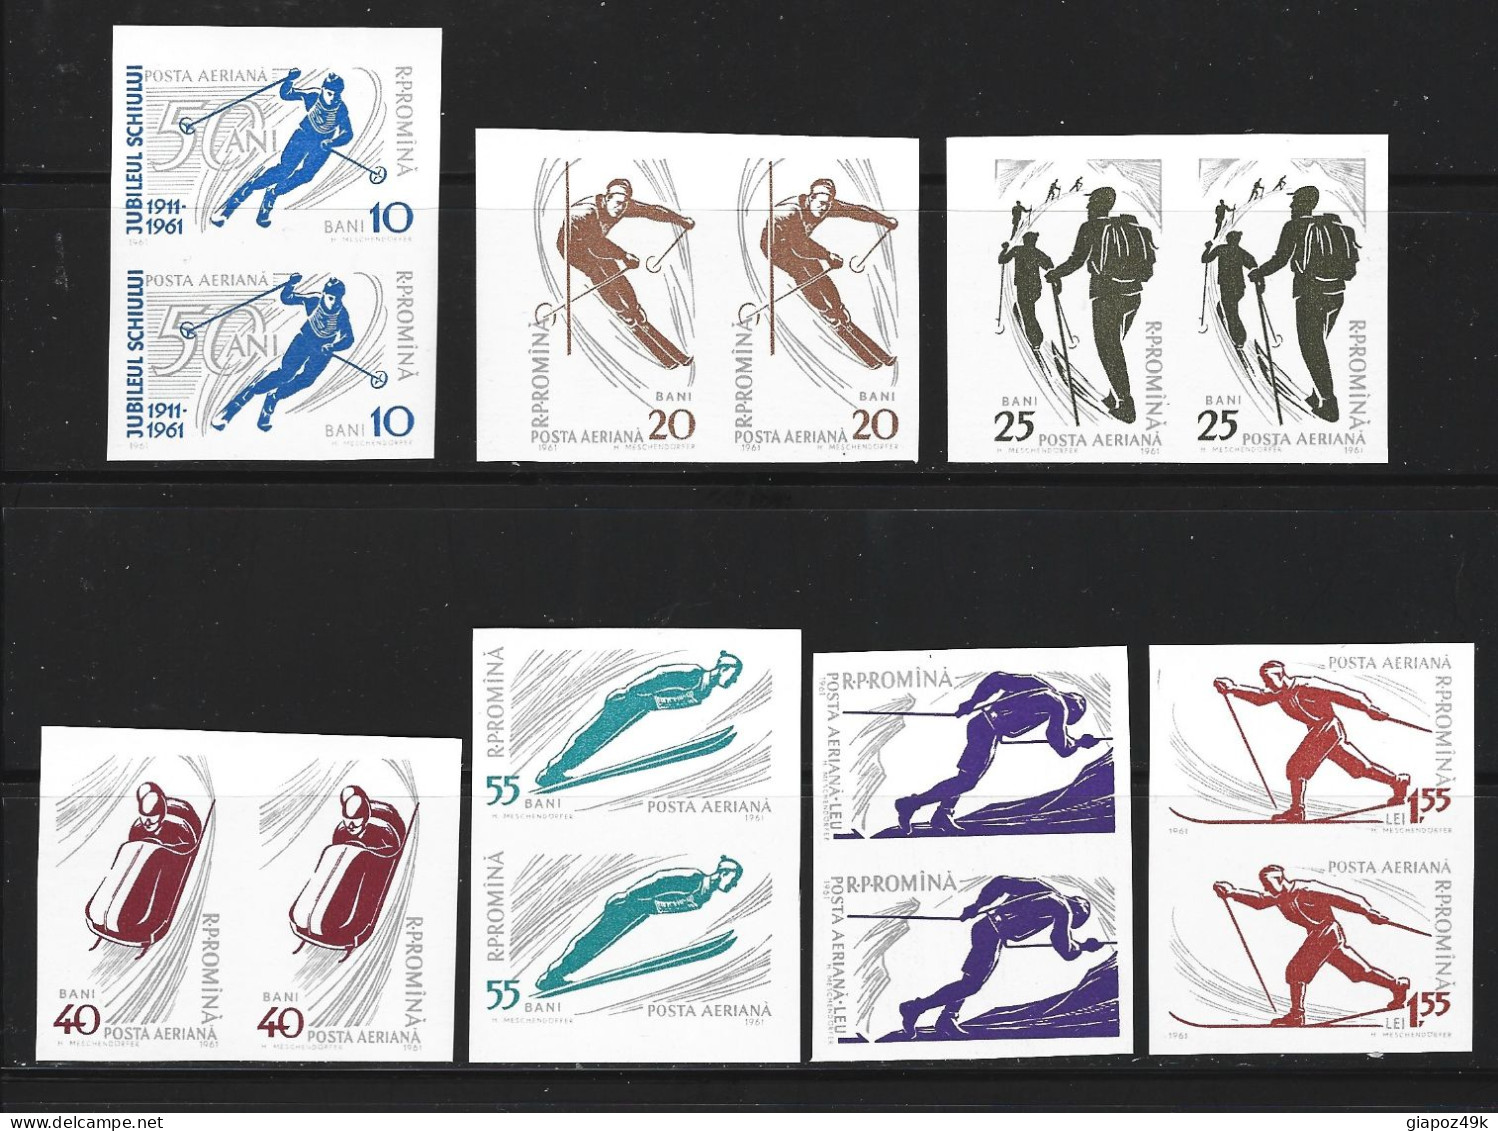 ● ROMANIA 1961 ֍ SPORT Di Montagna ֍ Posta Aerea ● Serie Complete ● In COPPIA ● Cat. 19 € ● Lotto N.X78 ● - Unused Stamps